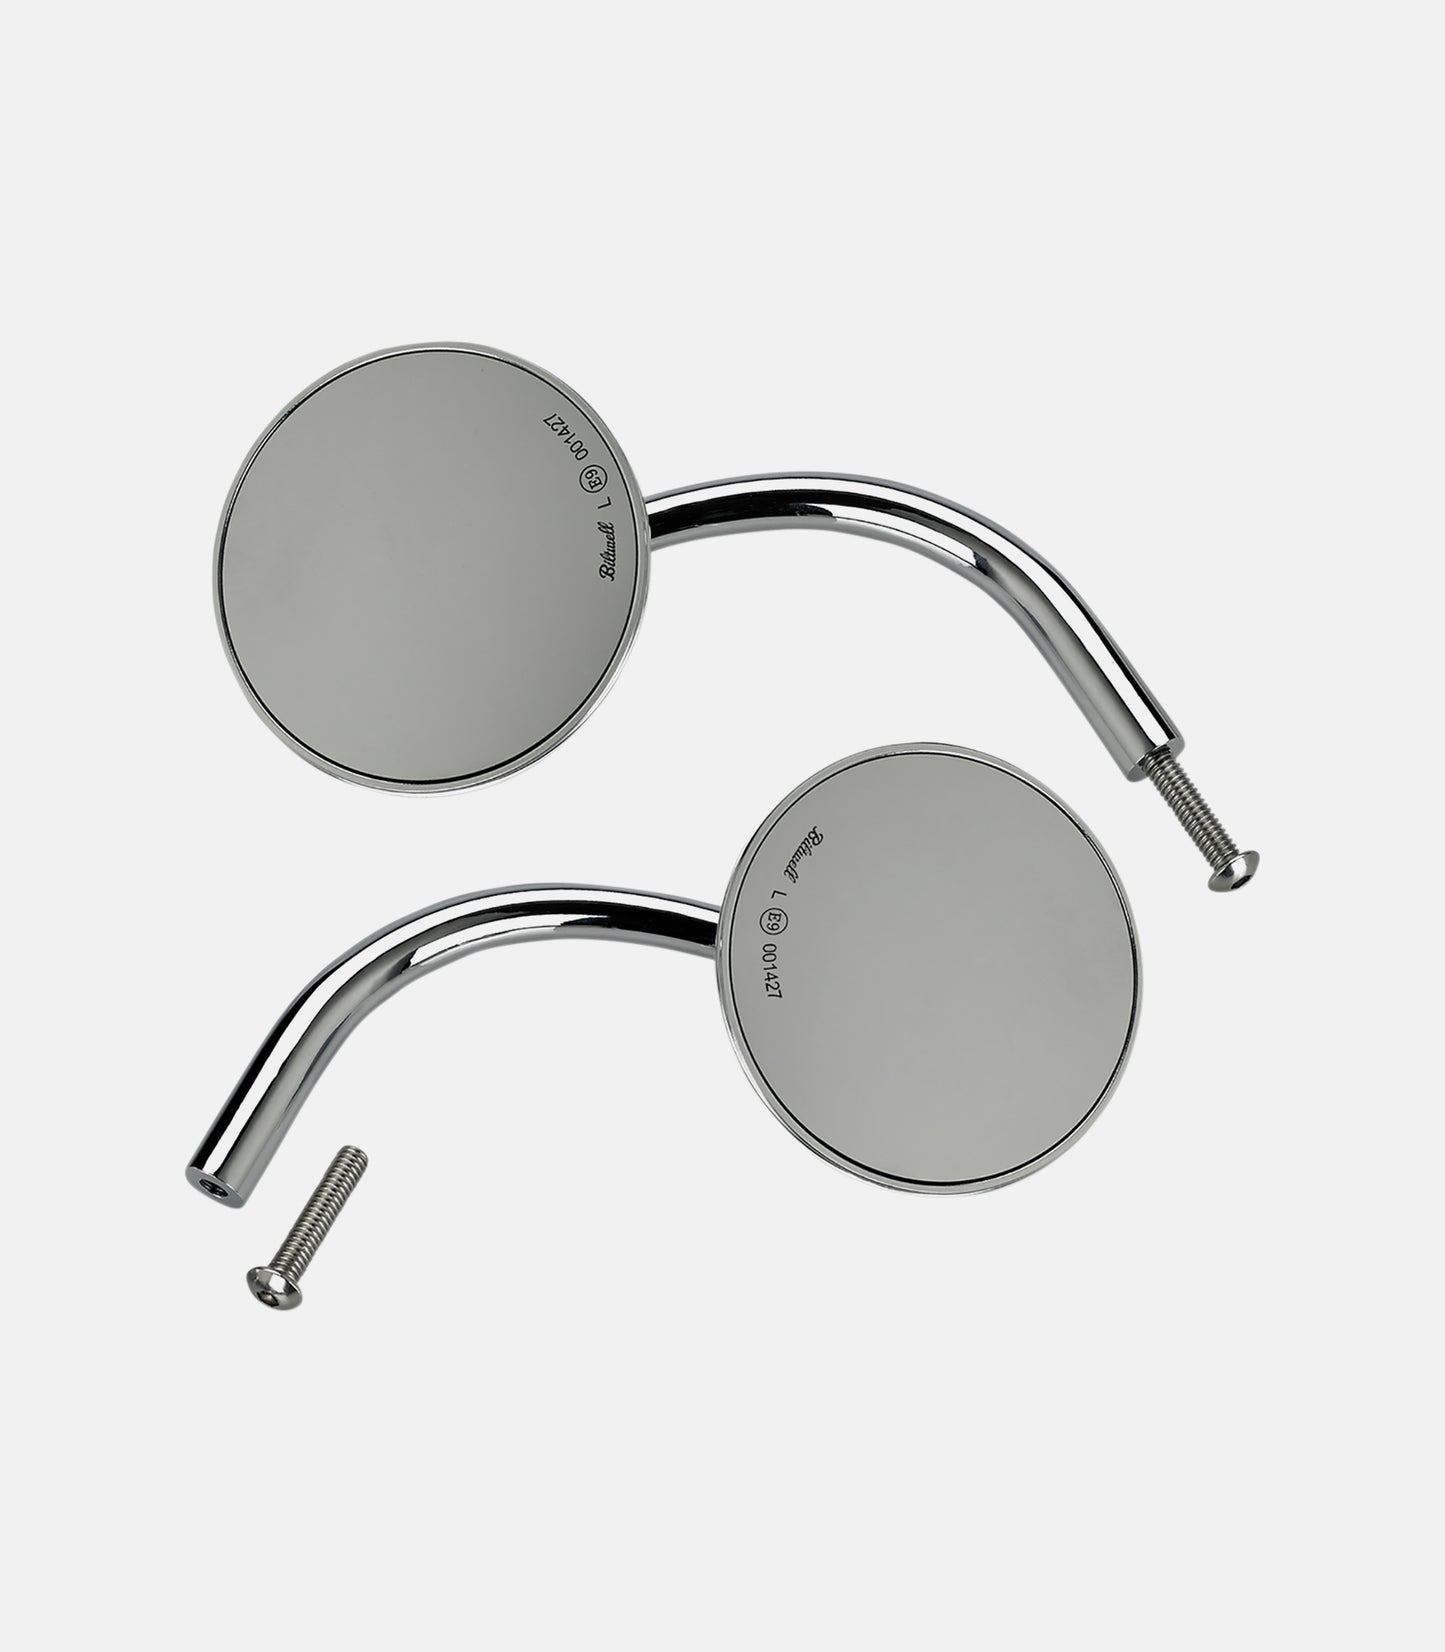 BILTWELL Round Mirror - Chrome